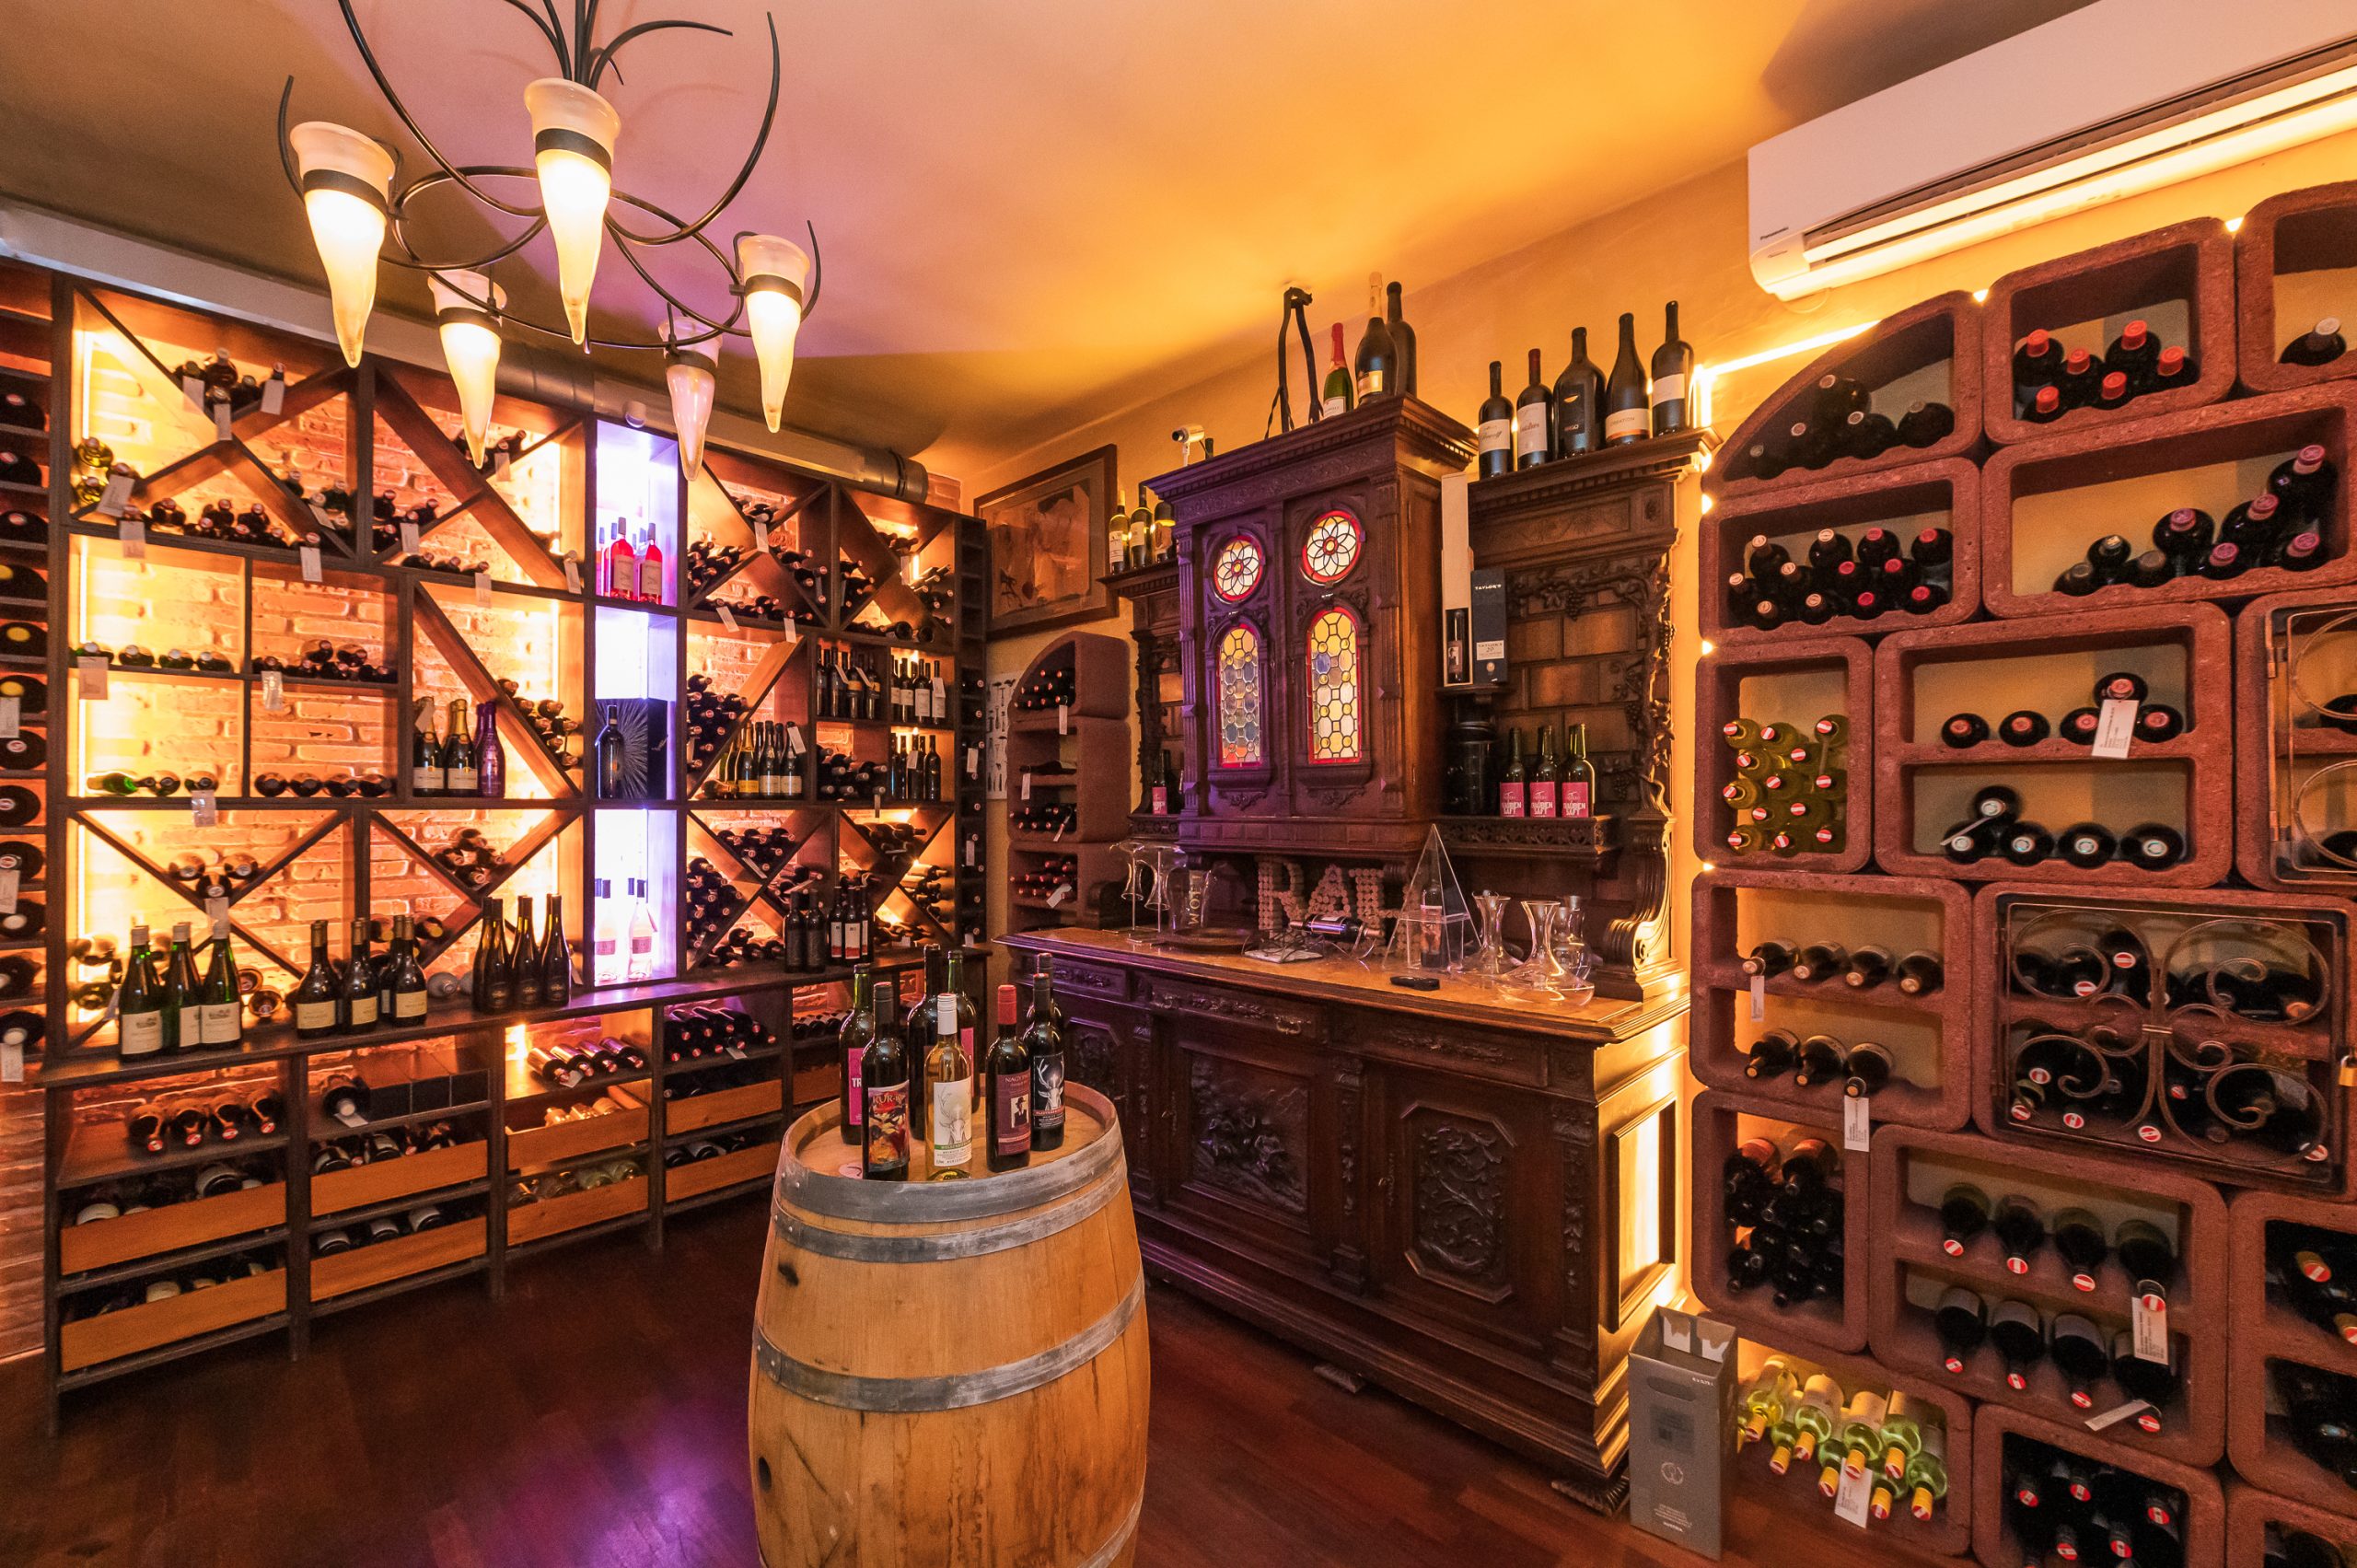 Stimmungsvolle Vinothek im Gasthaus Treiber mit einer reichen Auswahl an Weinen und warmem Licht, das die gemütliche Atmosphäre unterstreicht.